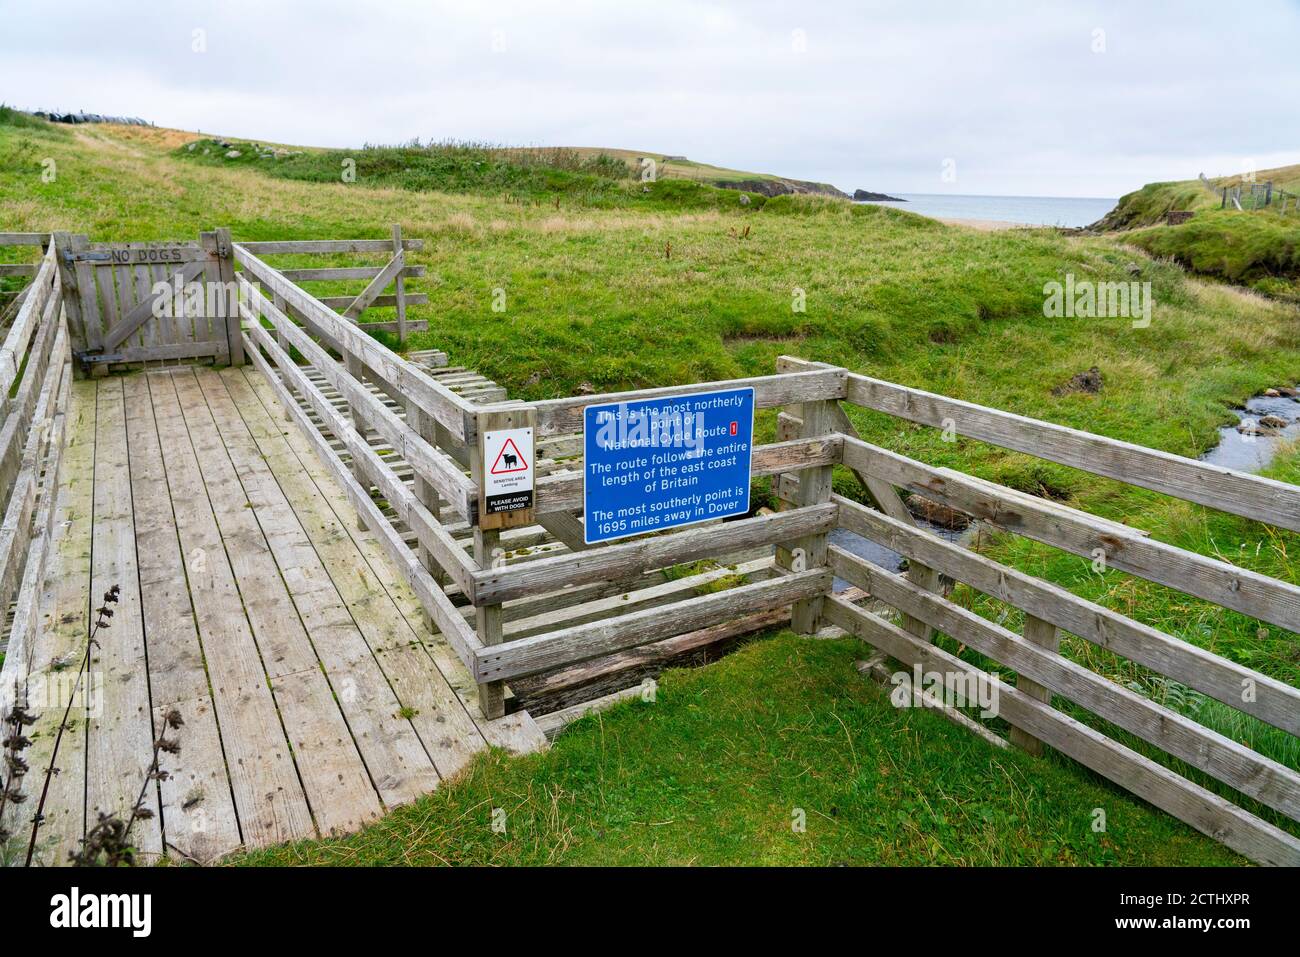 Panneau indiquant le point le plus au nord de la National cycle route à Skaw sur Unst, Shetland, Écosse, Royaume-Uni Banque D'Images